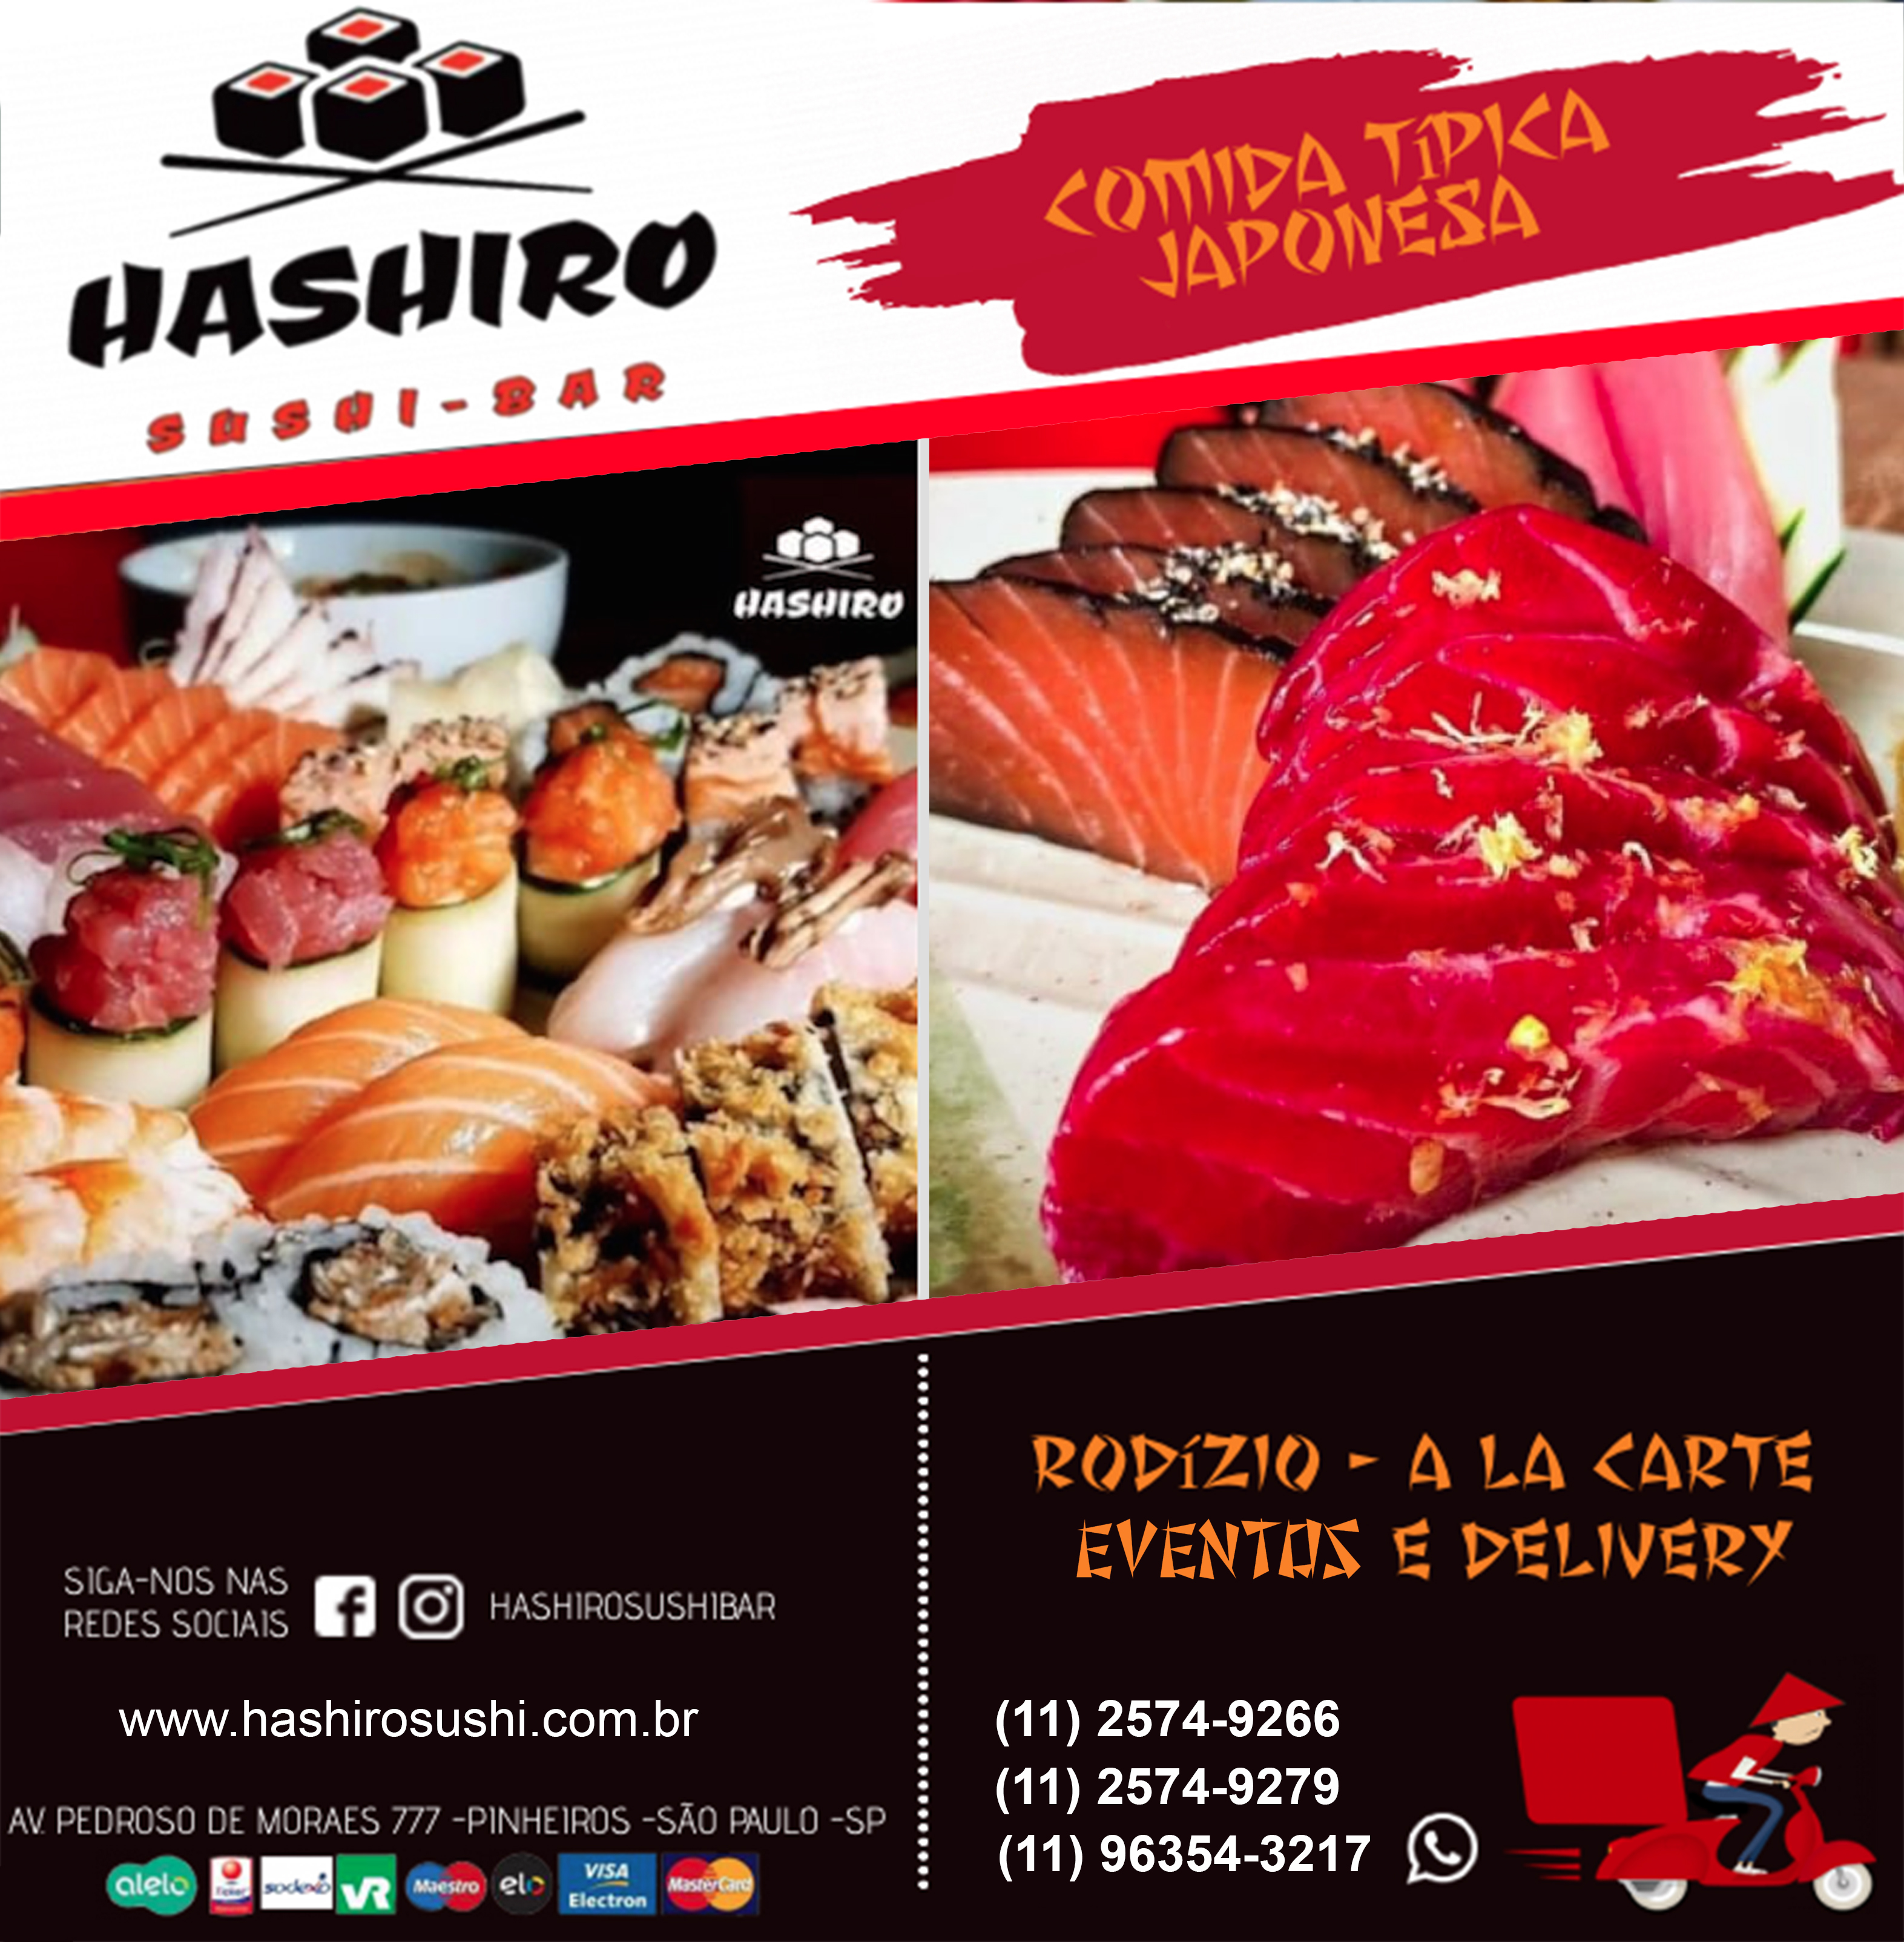 Rodízio de Sushi em Pinheiros – HASHIRO SUSHI BAR